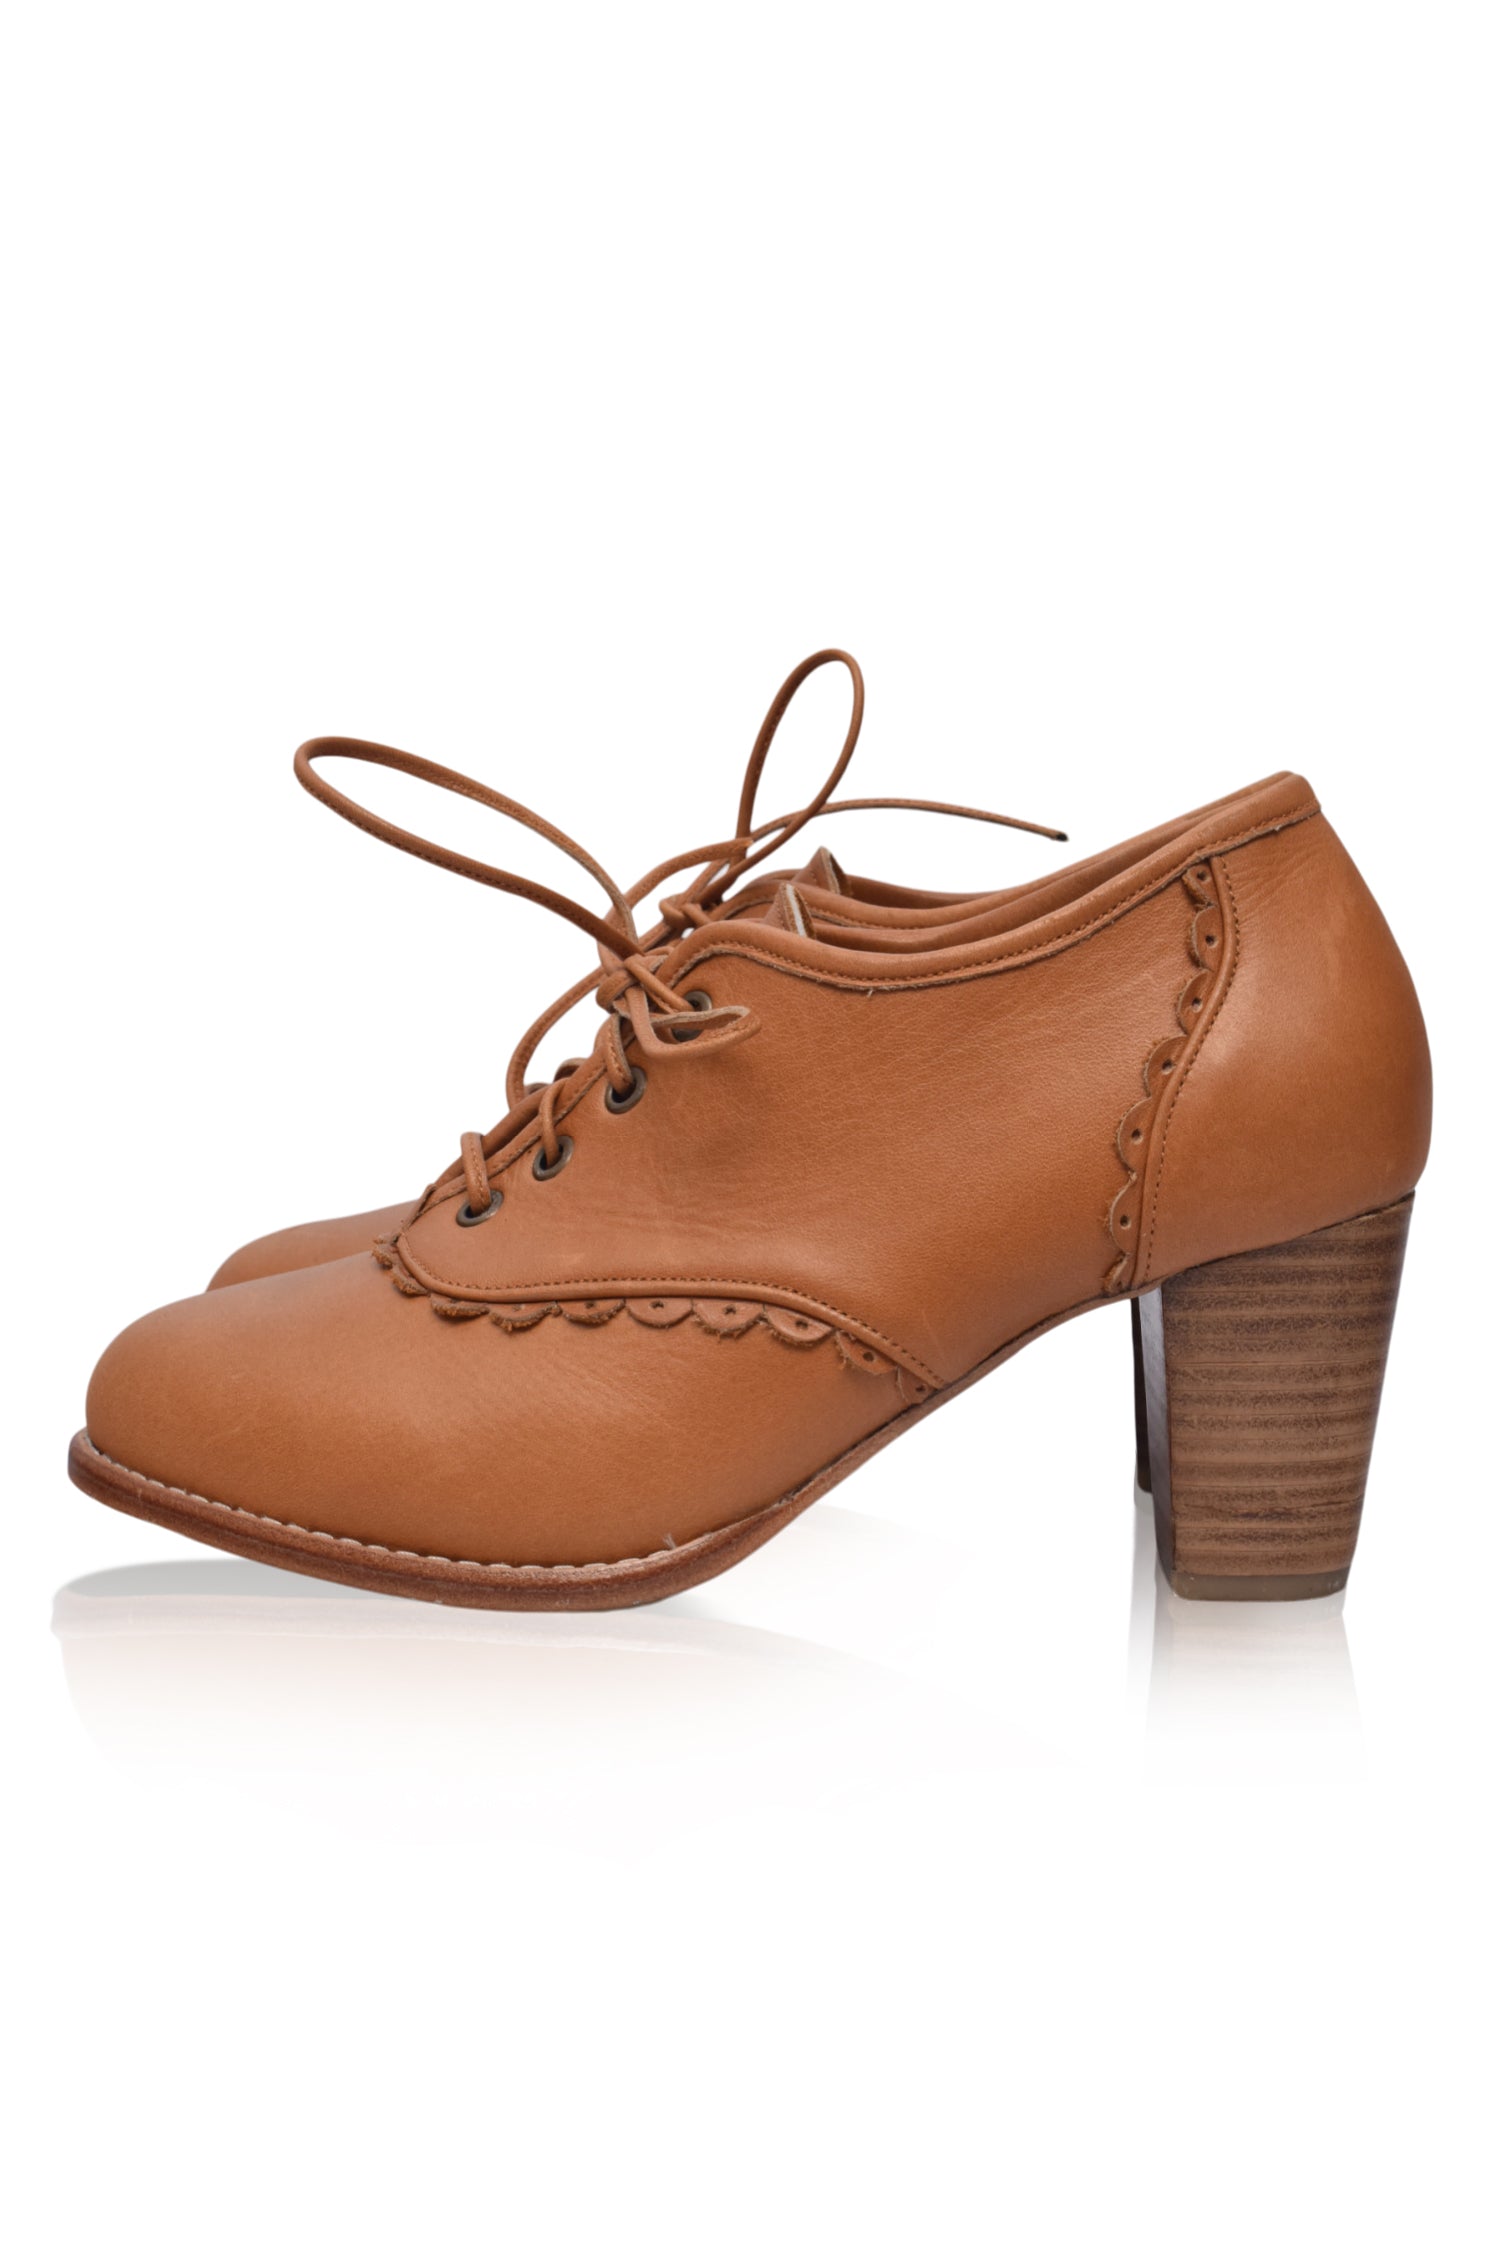 Black Shoes Women Vintage Heels Leather Pumps Oxford Lacquer 